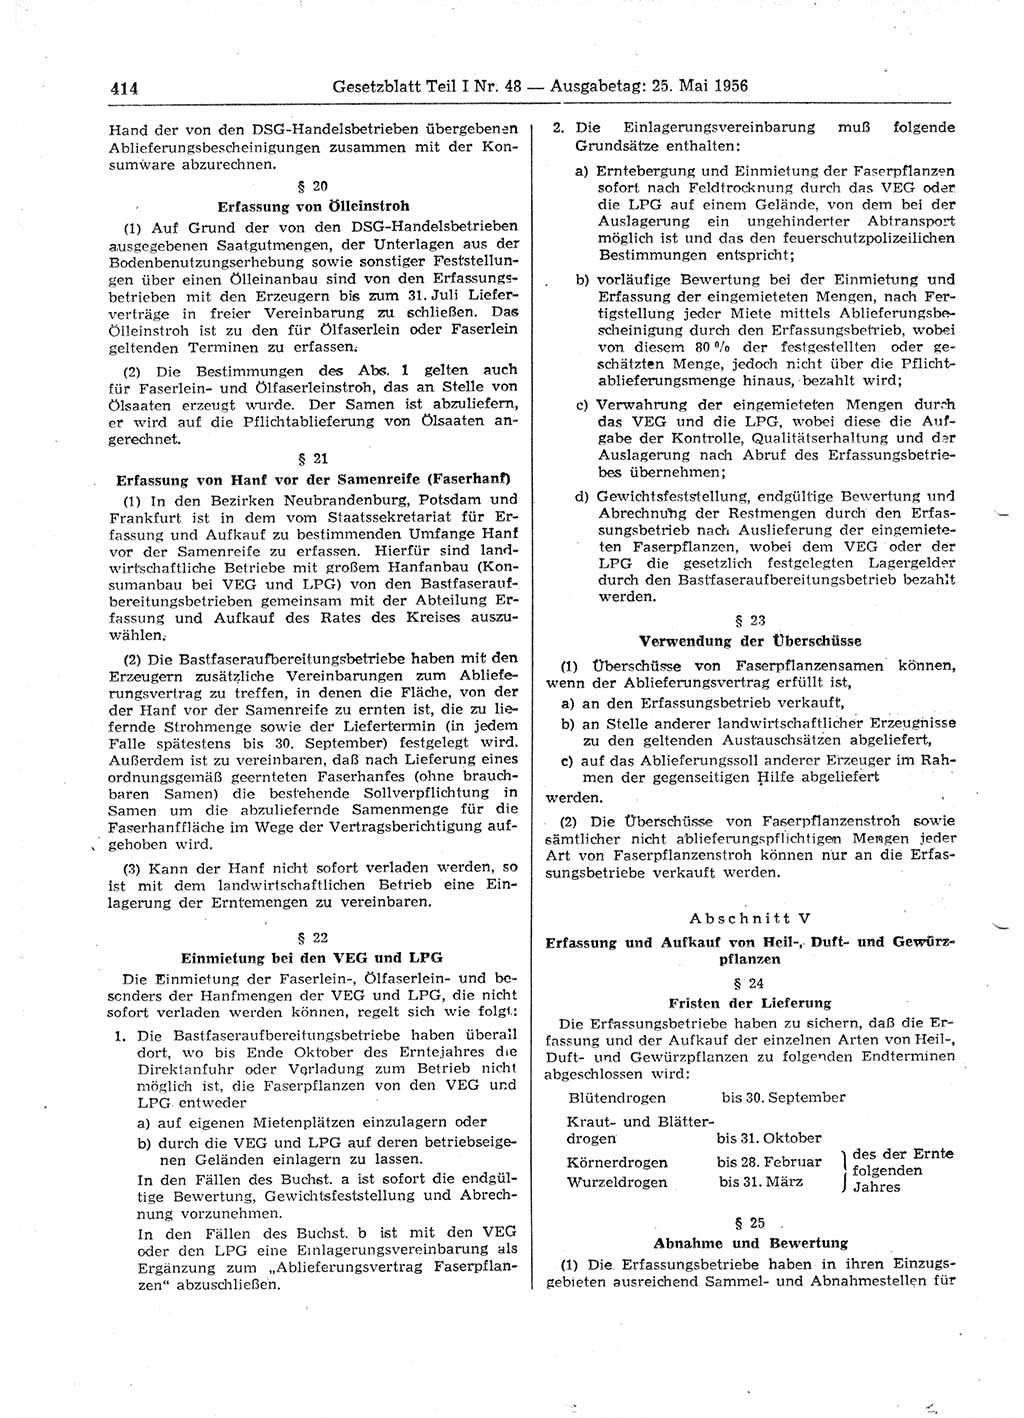 Gesetzblatt (GBl.) der Deutschen Demokratischen Republik (DDR) Teil Ⅰ 1956, Seite 414 (GBl. DDR Ⅰ 1956, S. 414)